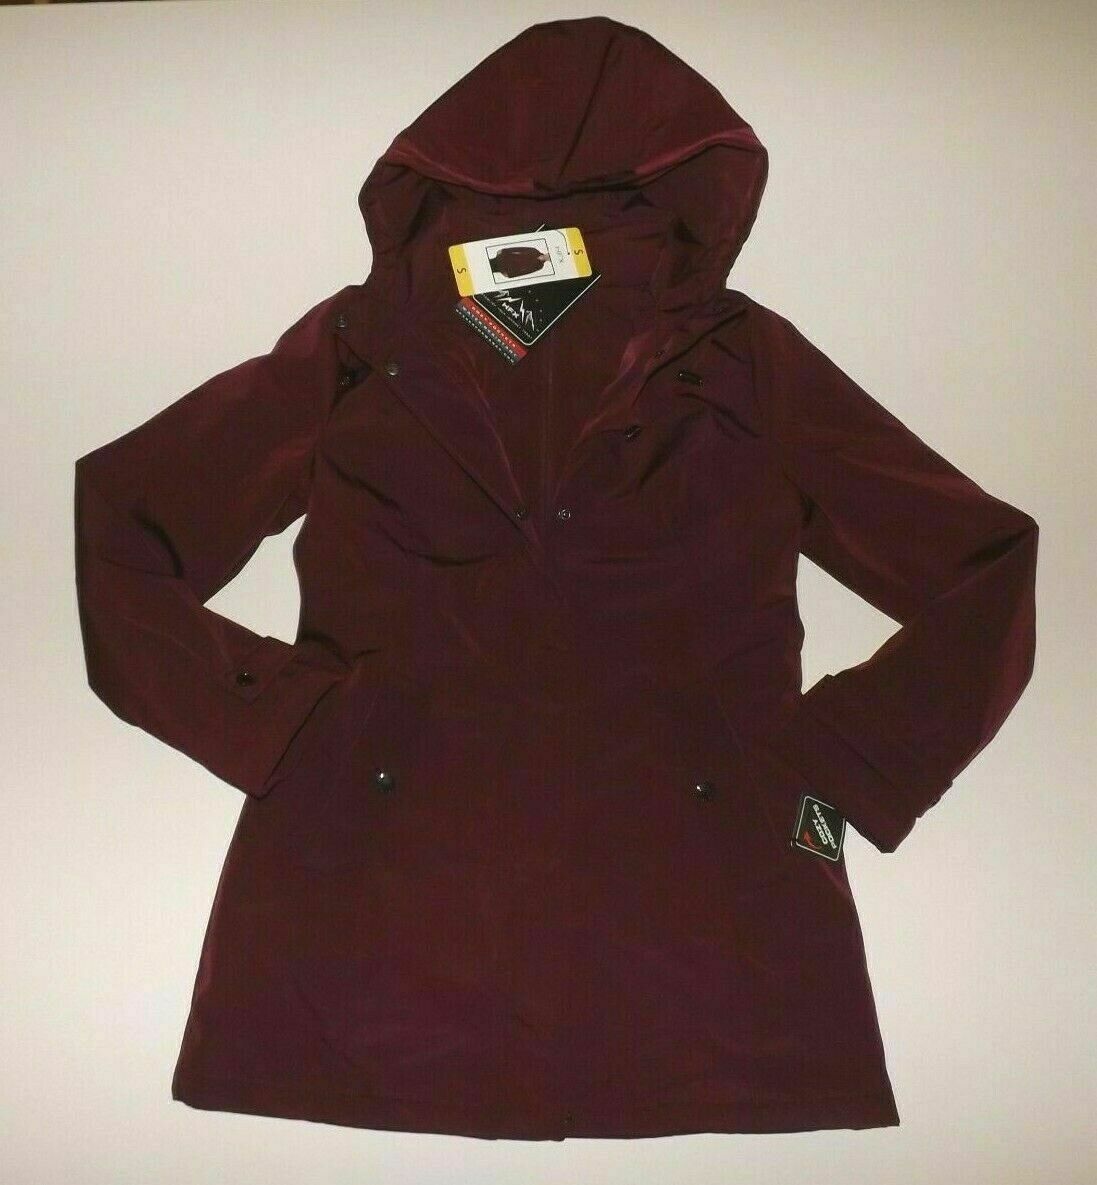 HFX Womens Rain Jacket Coat Zinfandel Burgundy Hooded Jacket Size Small - image 1 of 3